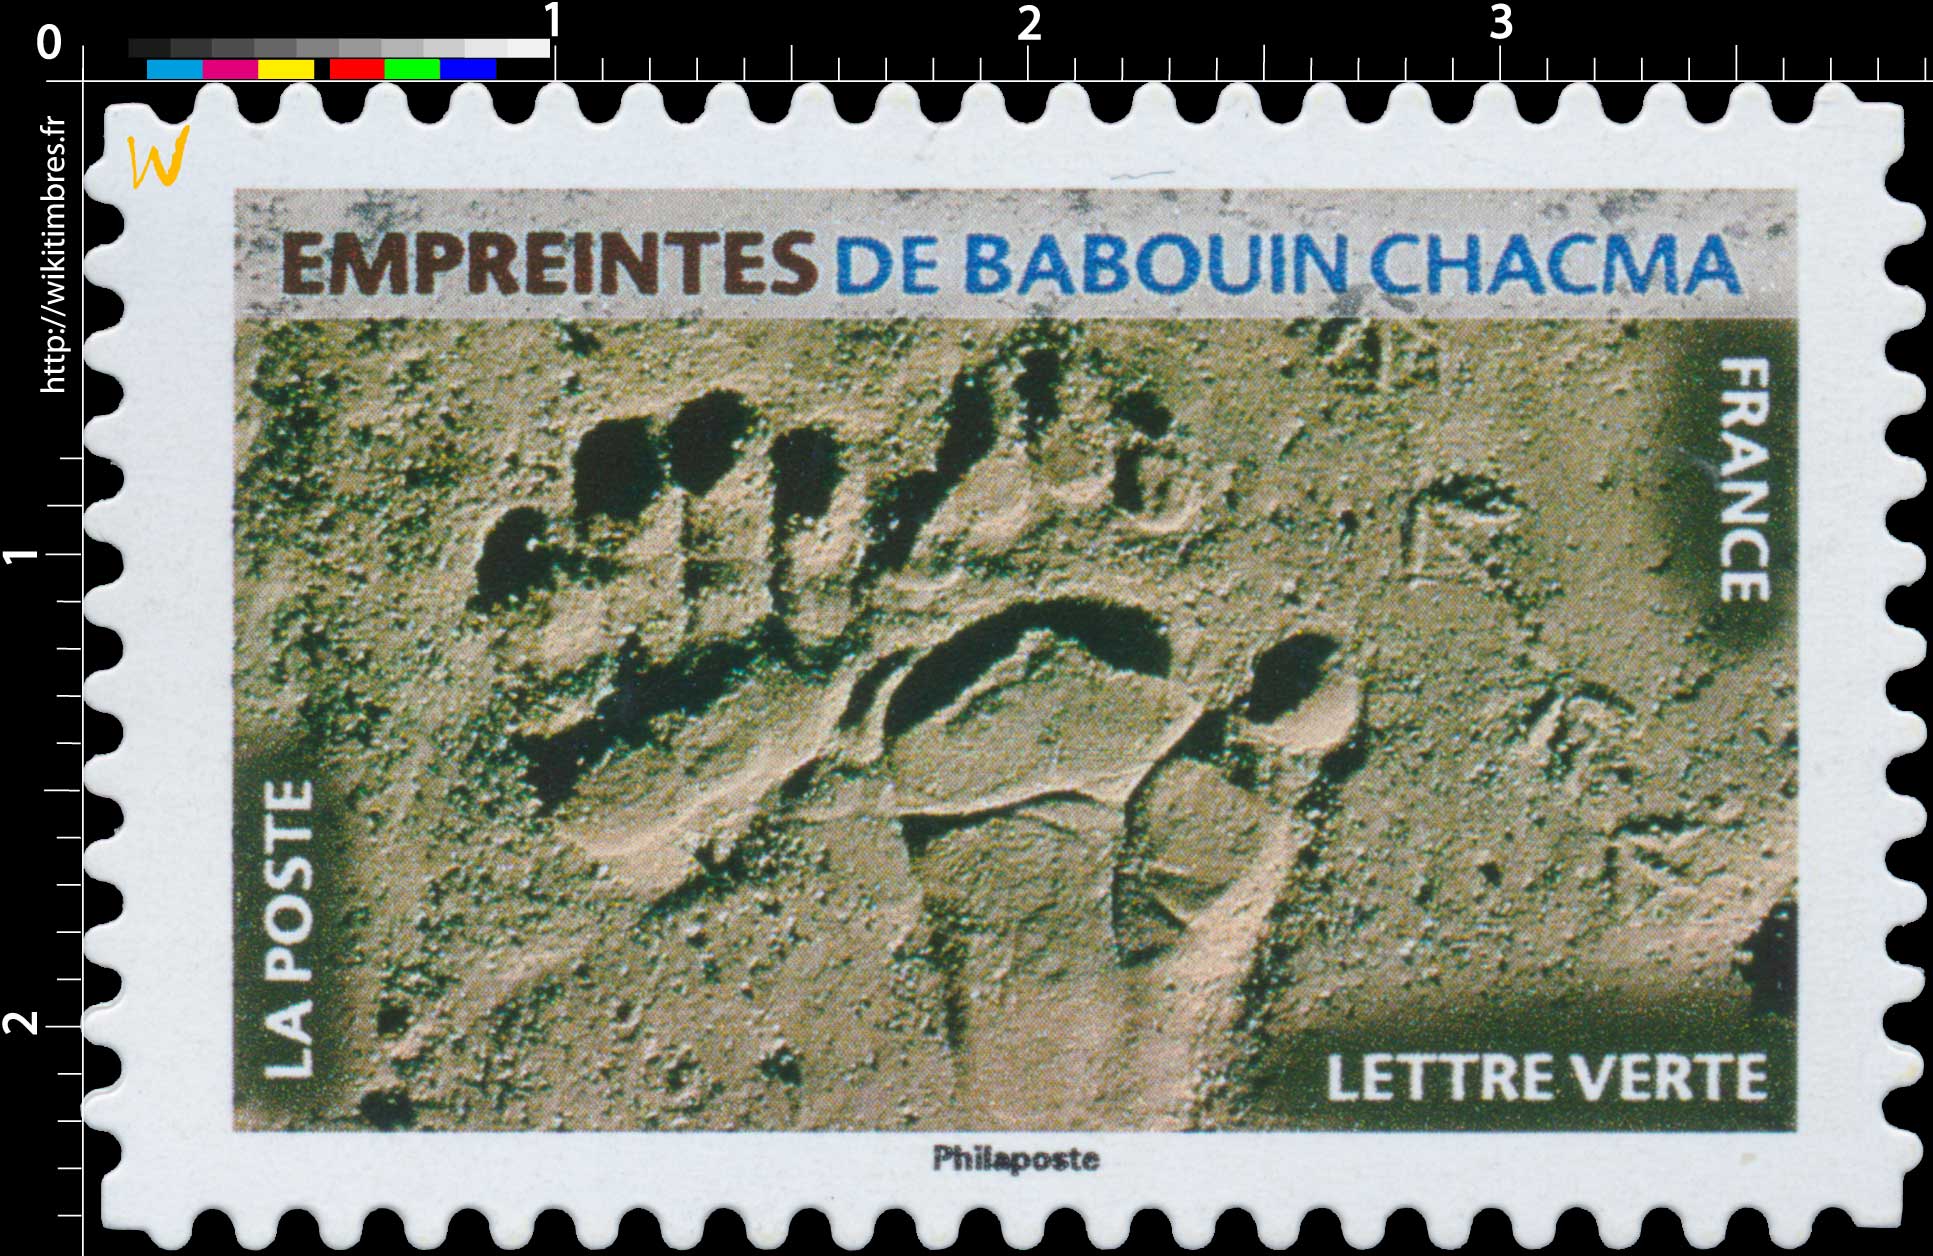 2021 Empreintes de babouin chacma 